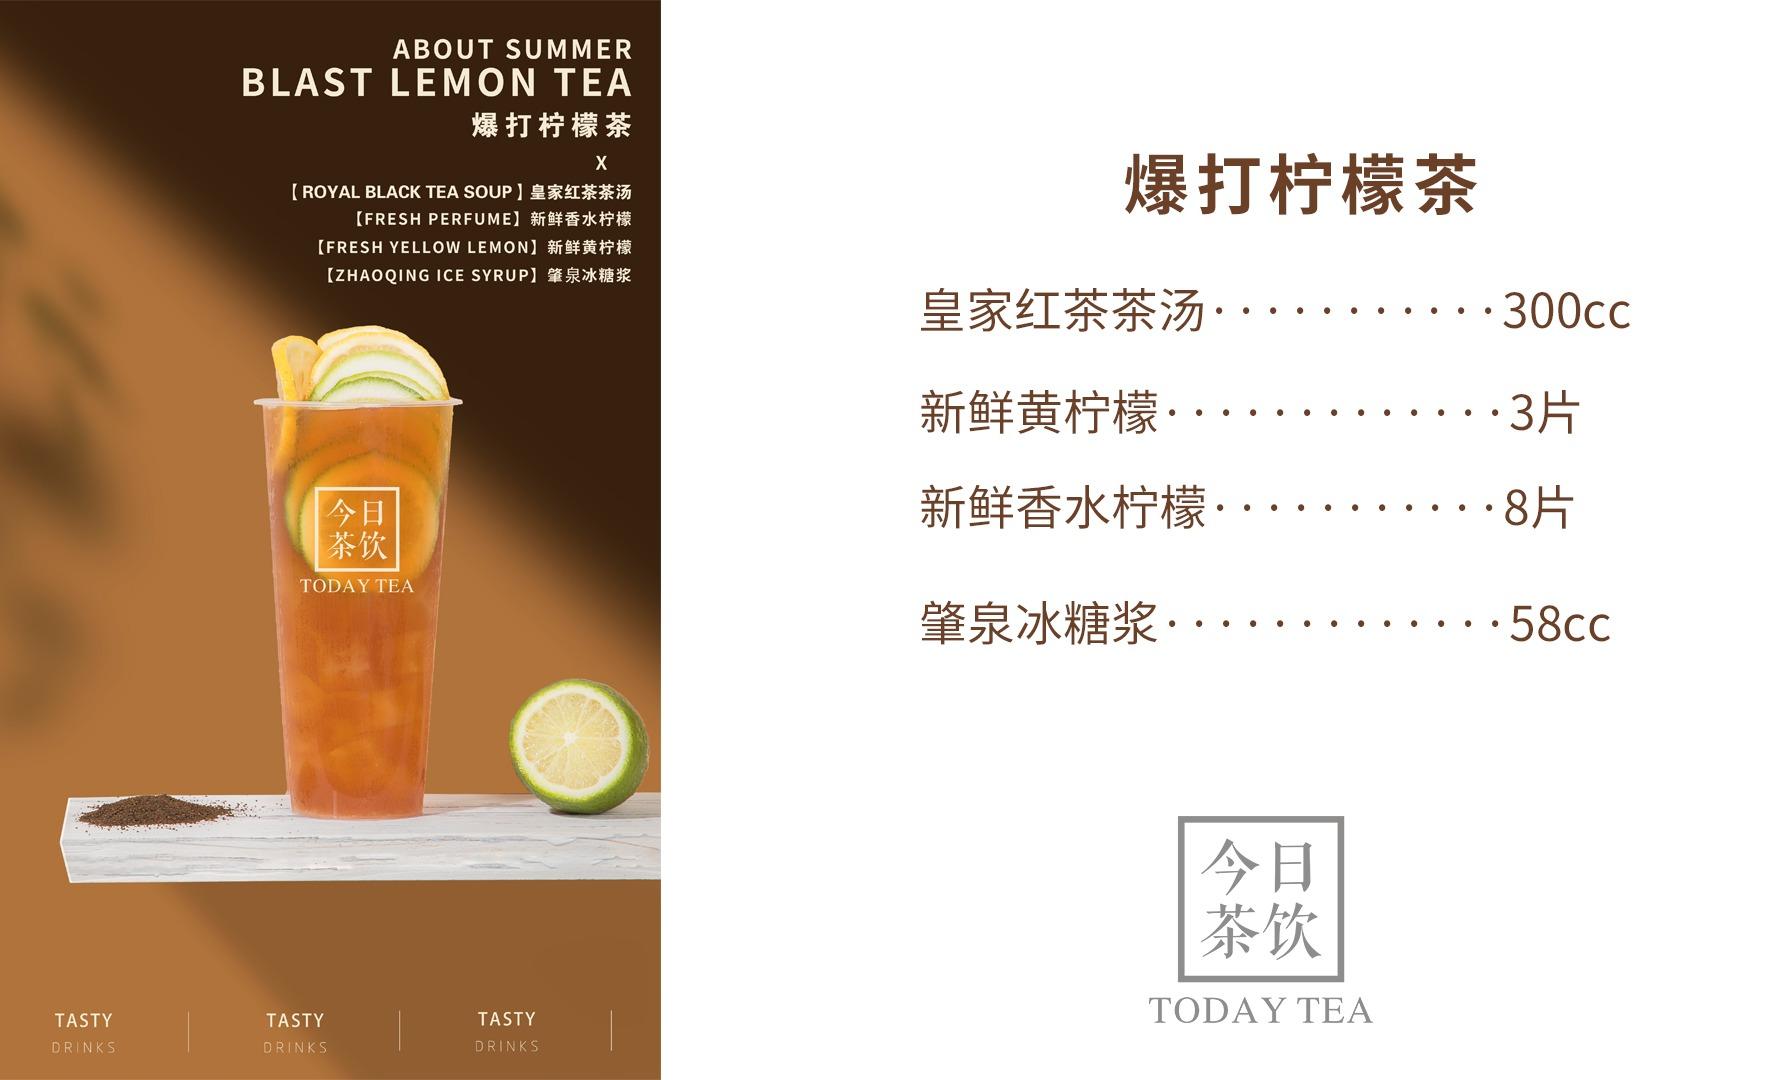 日本 日東紅茶 10入 皇家奶茶 140g (原味奶茶) 沖泡 奶茶 | 東芳小舖直營店 | 樂天市場Rakuten